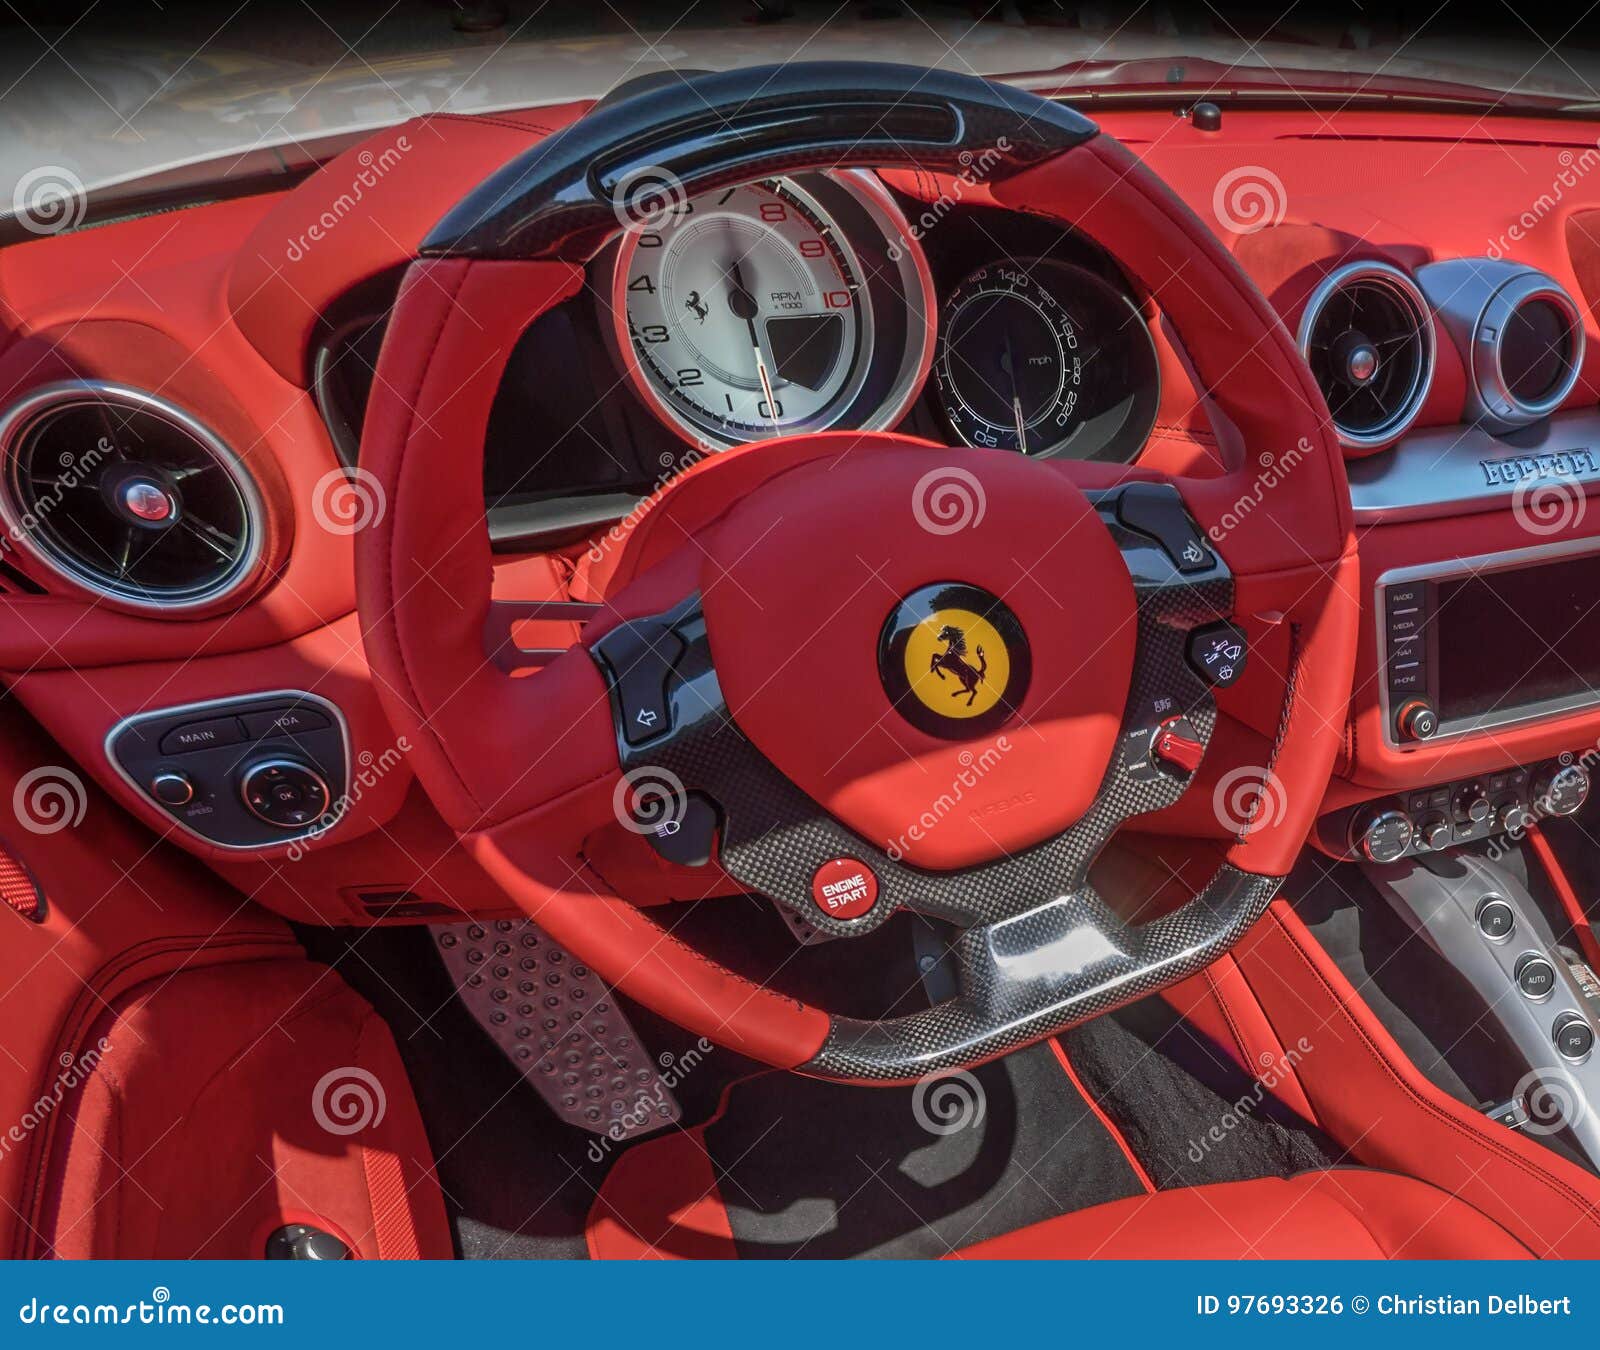 Ferrari F40 Dashboard